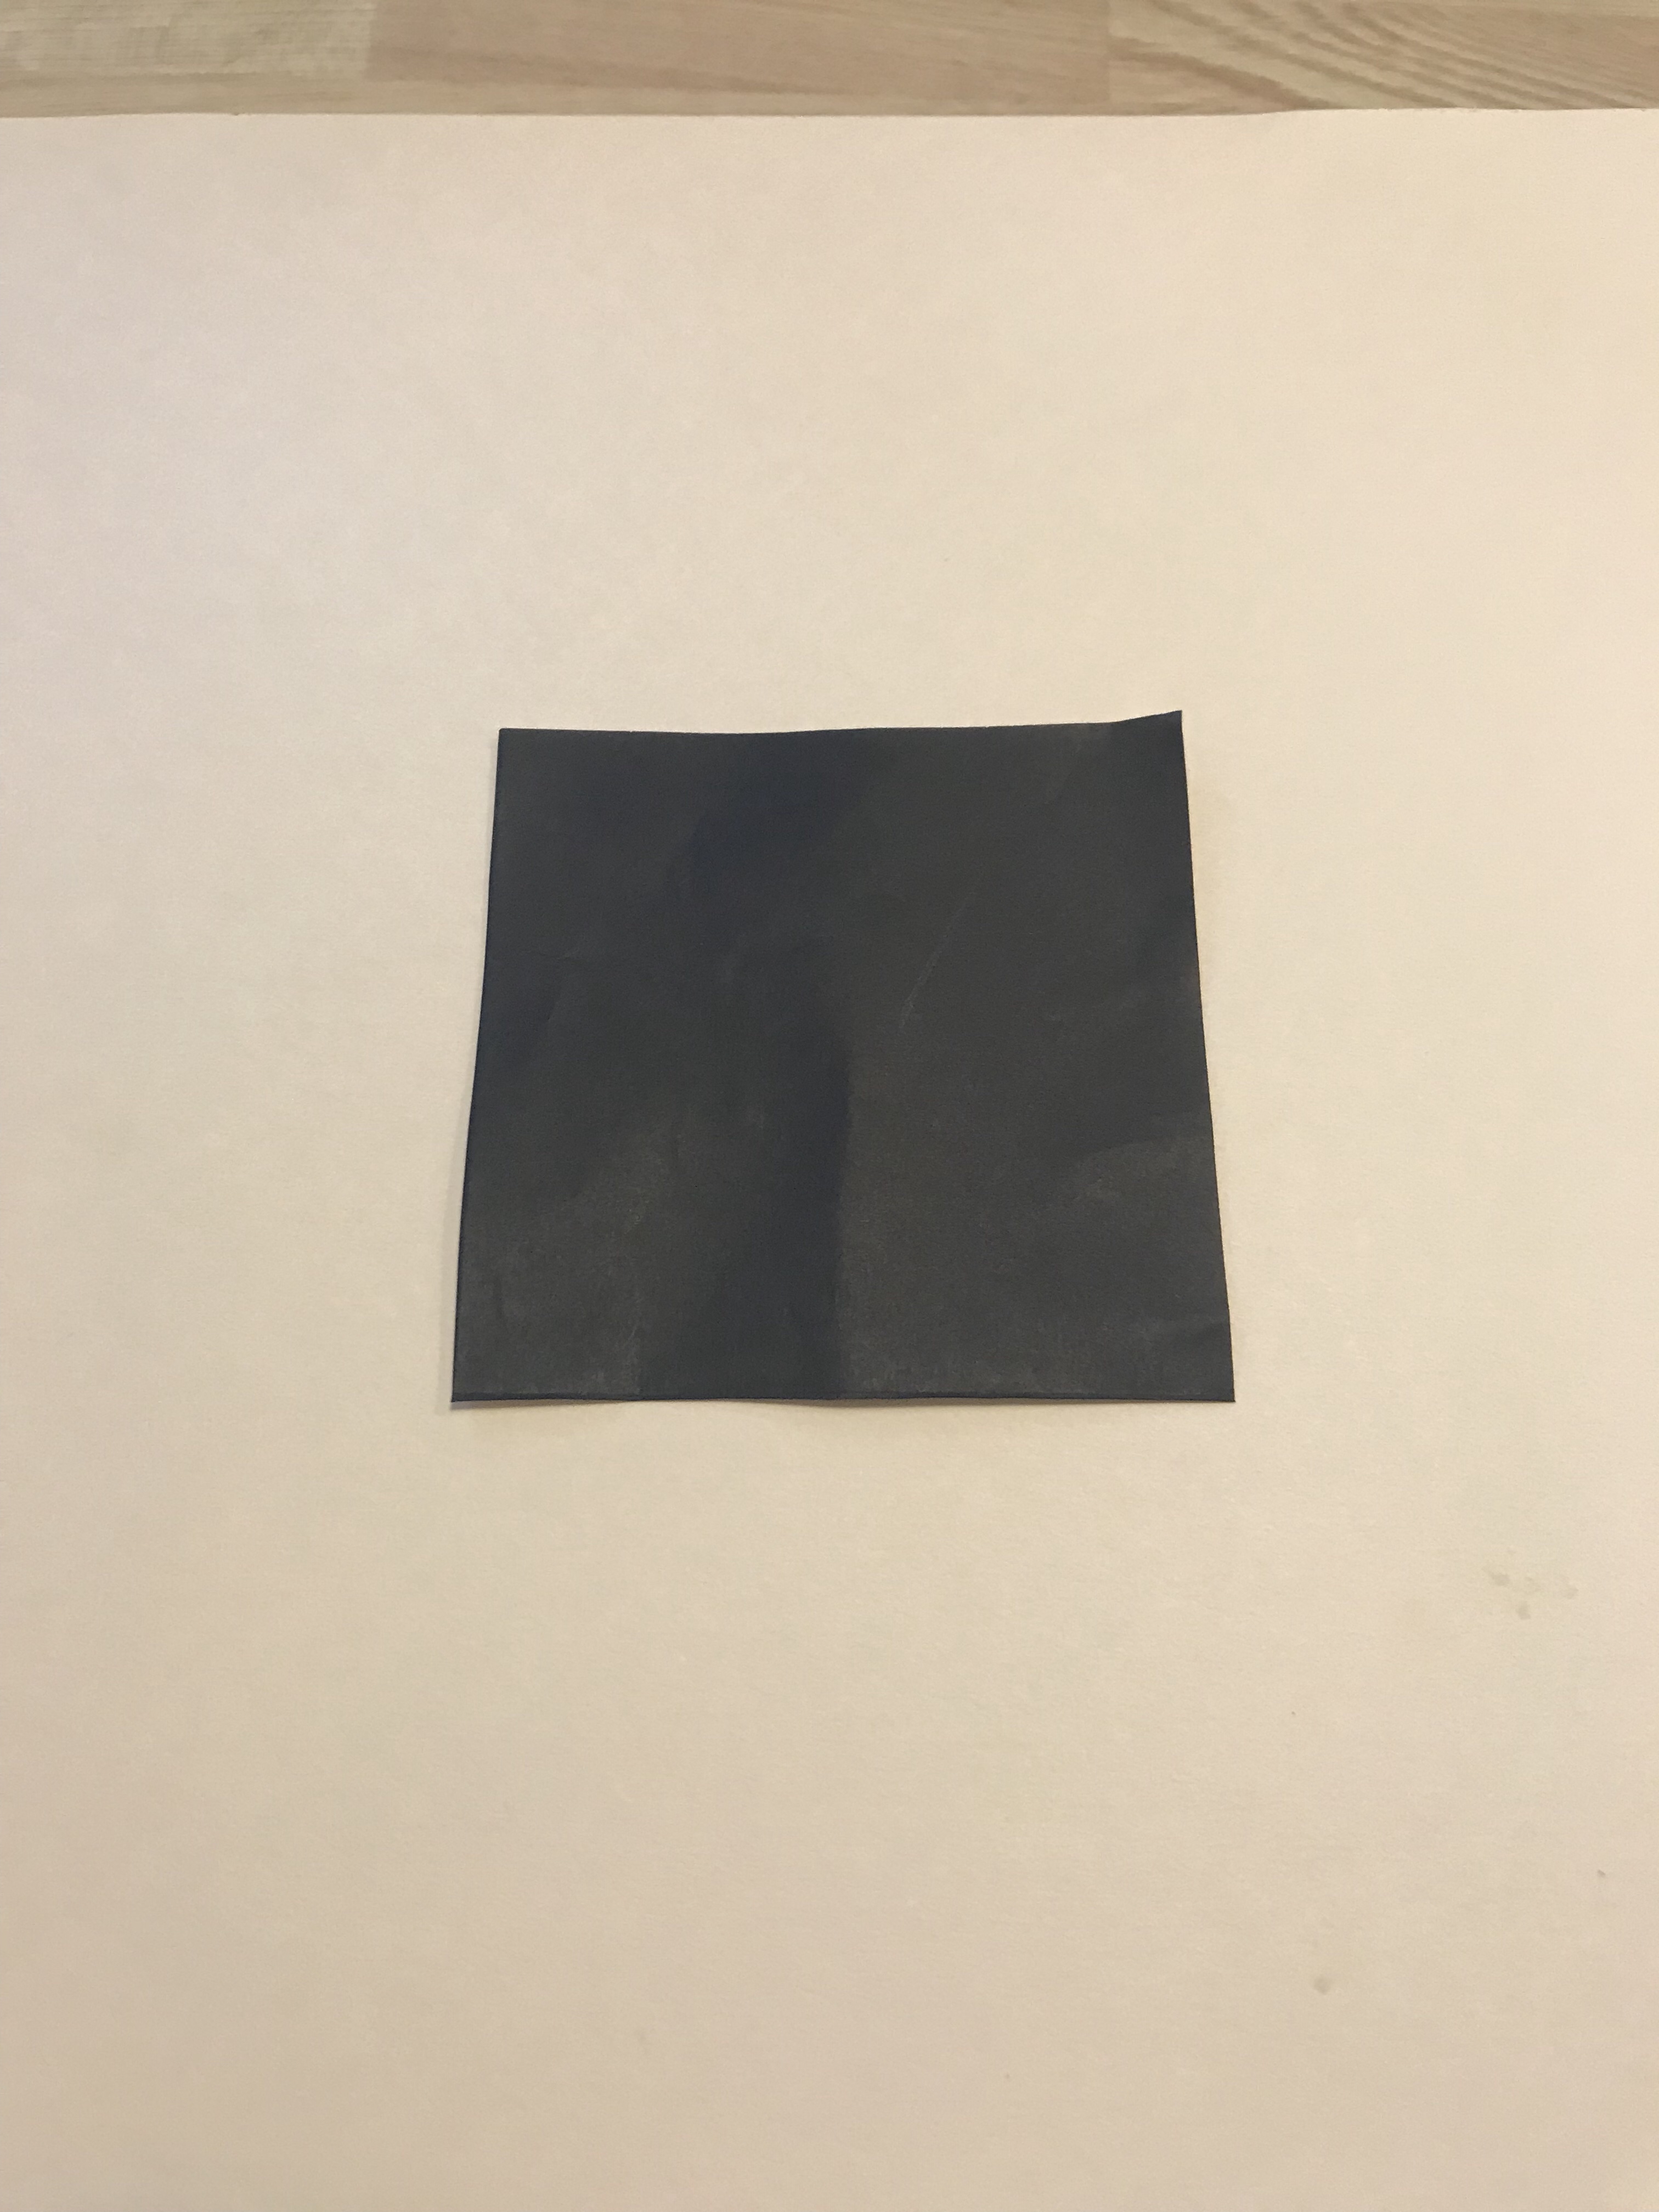 １／４サイズの黒い折り紙